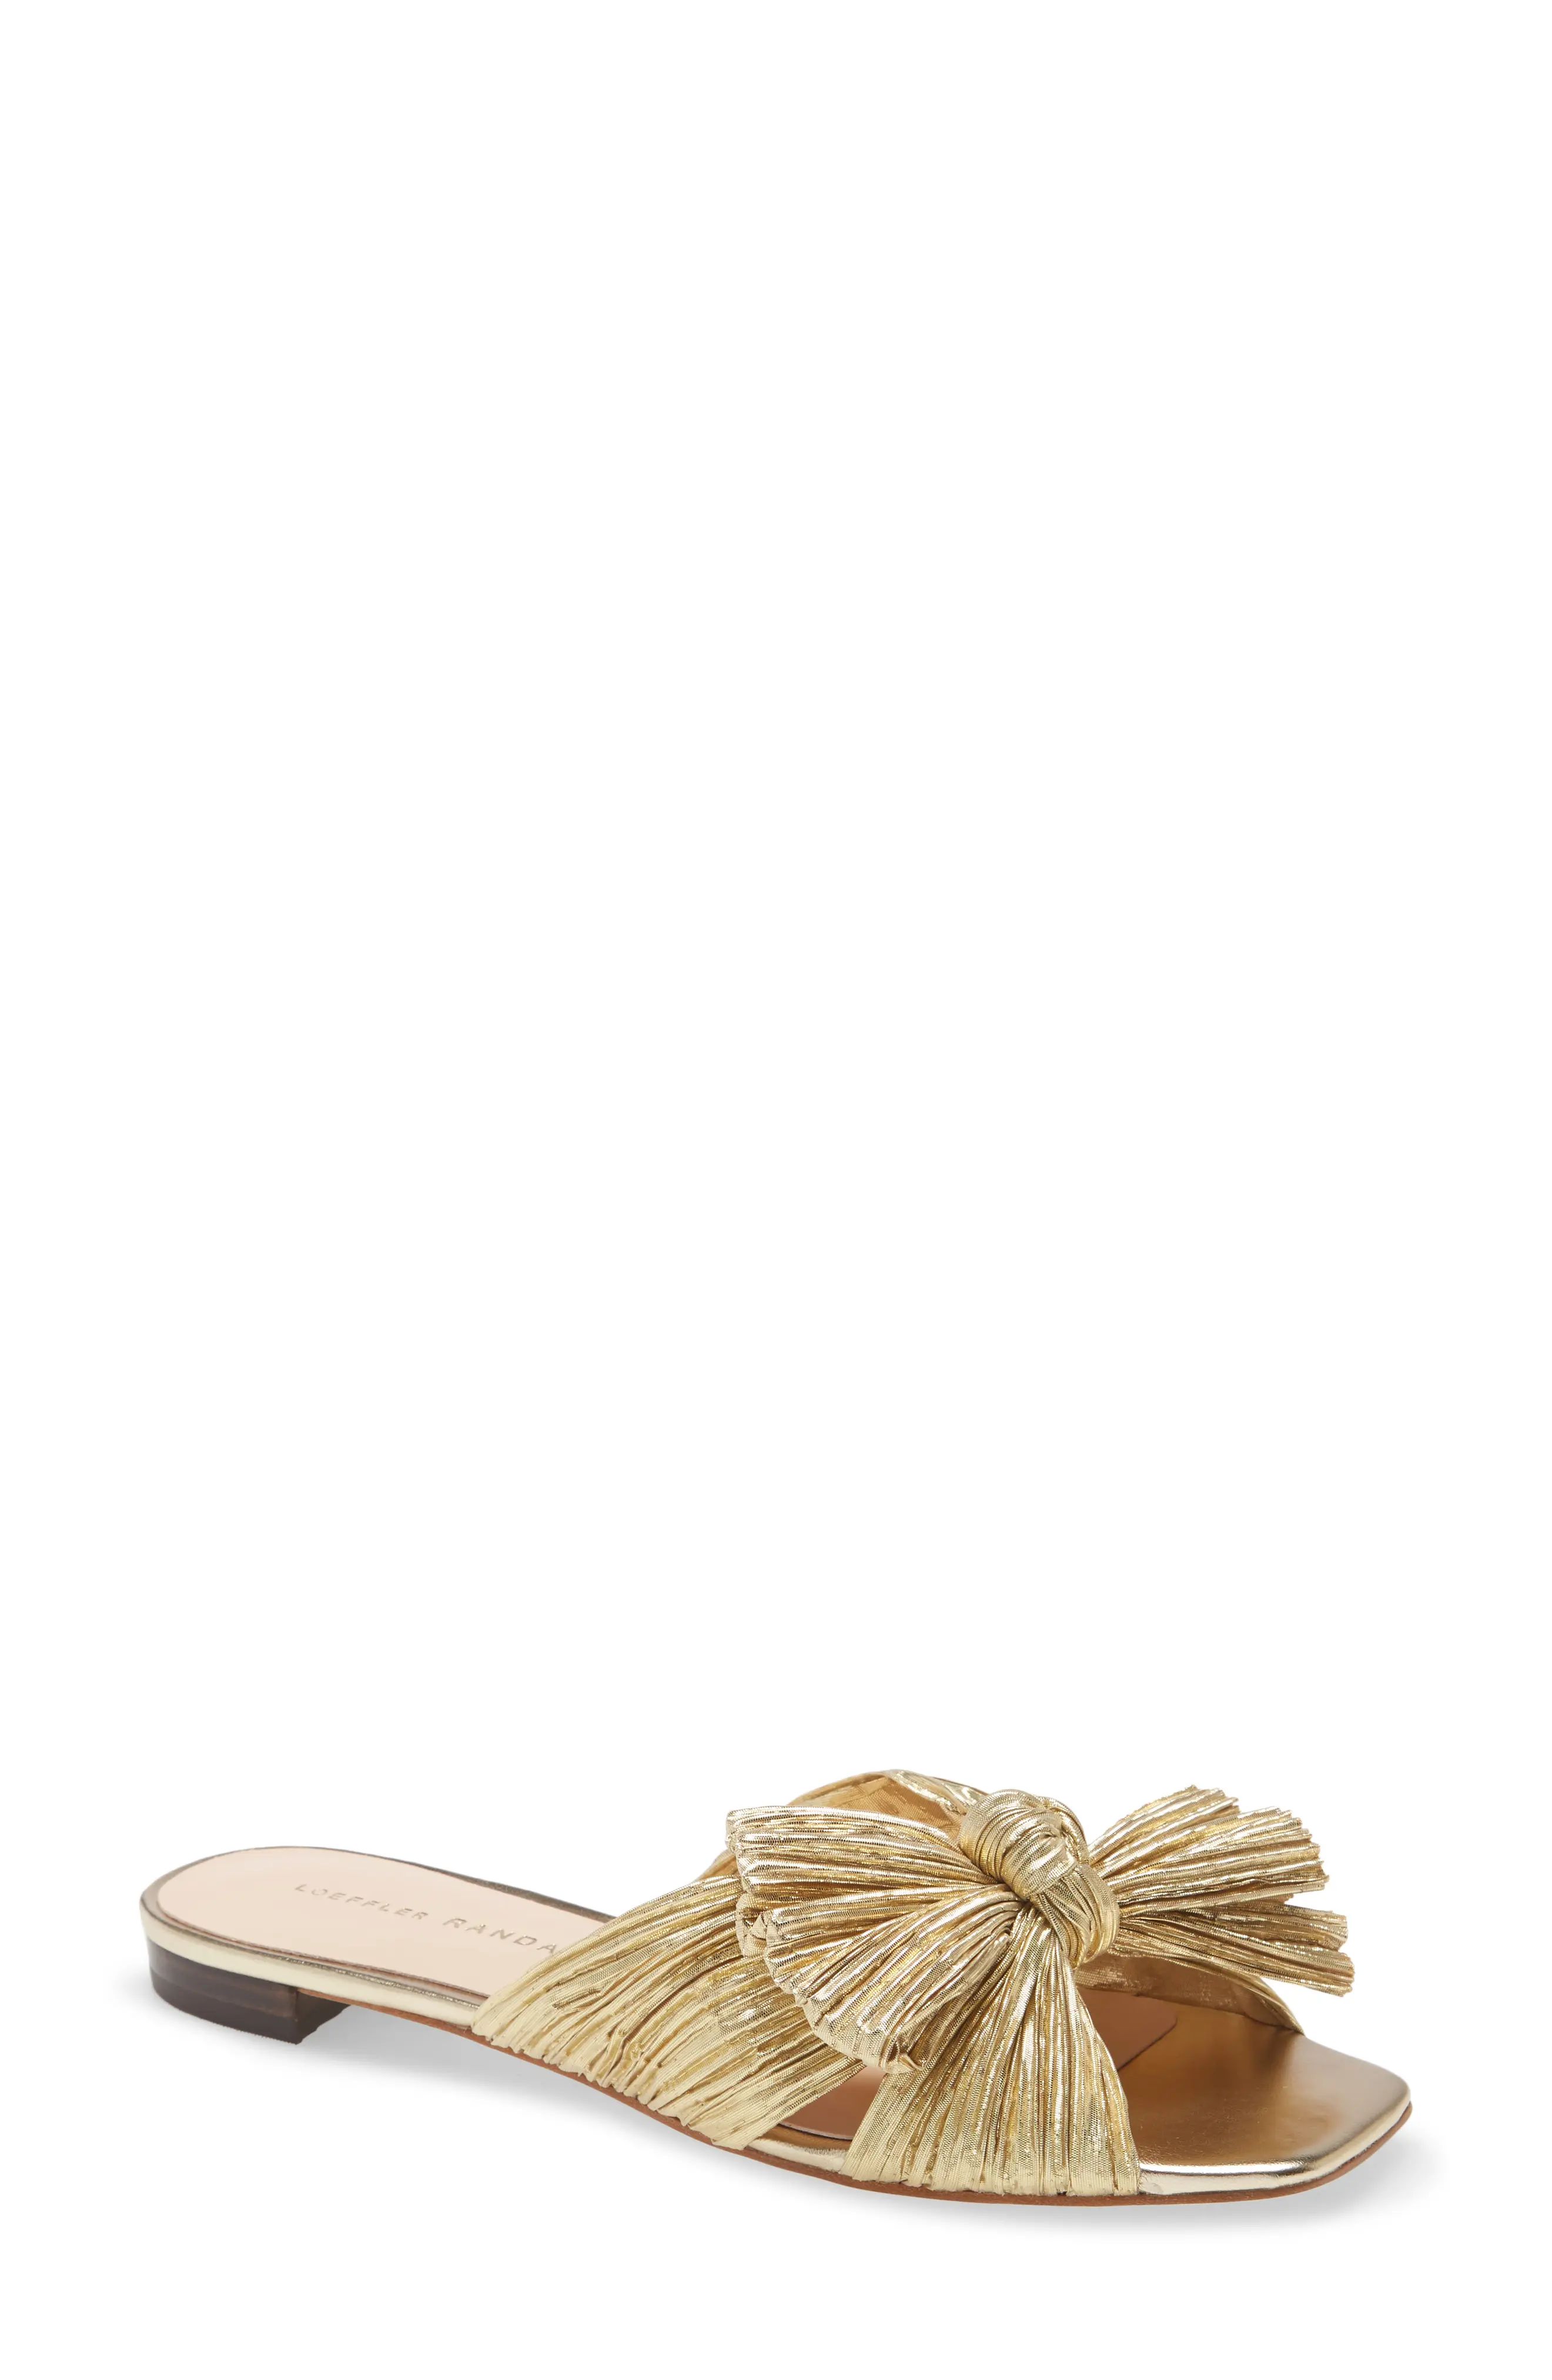 Loeffler Randall Daphne Slide Sandal, Size 8 in Gold at Nordstrom | Nordstrom